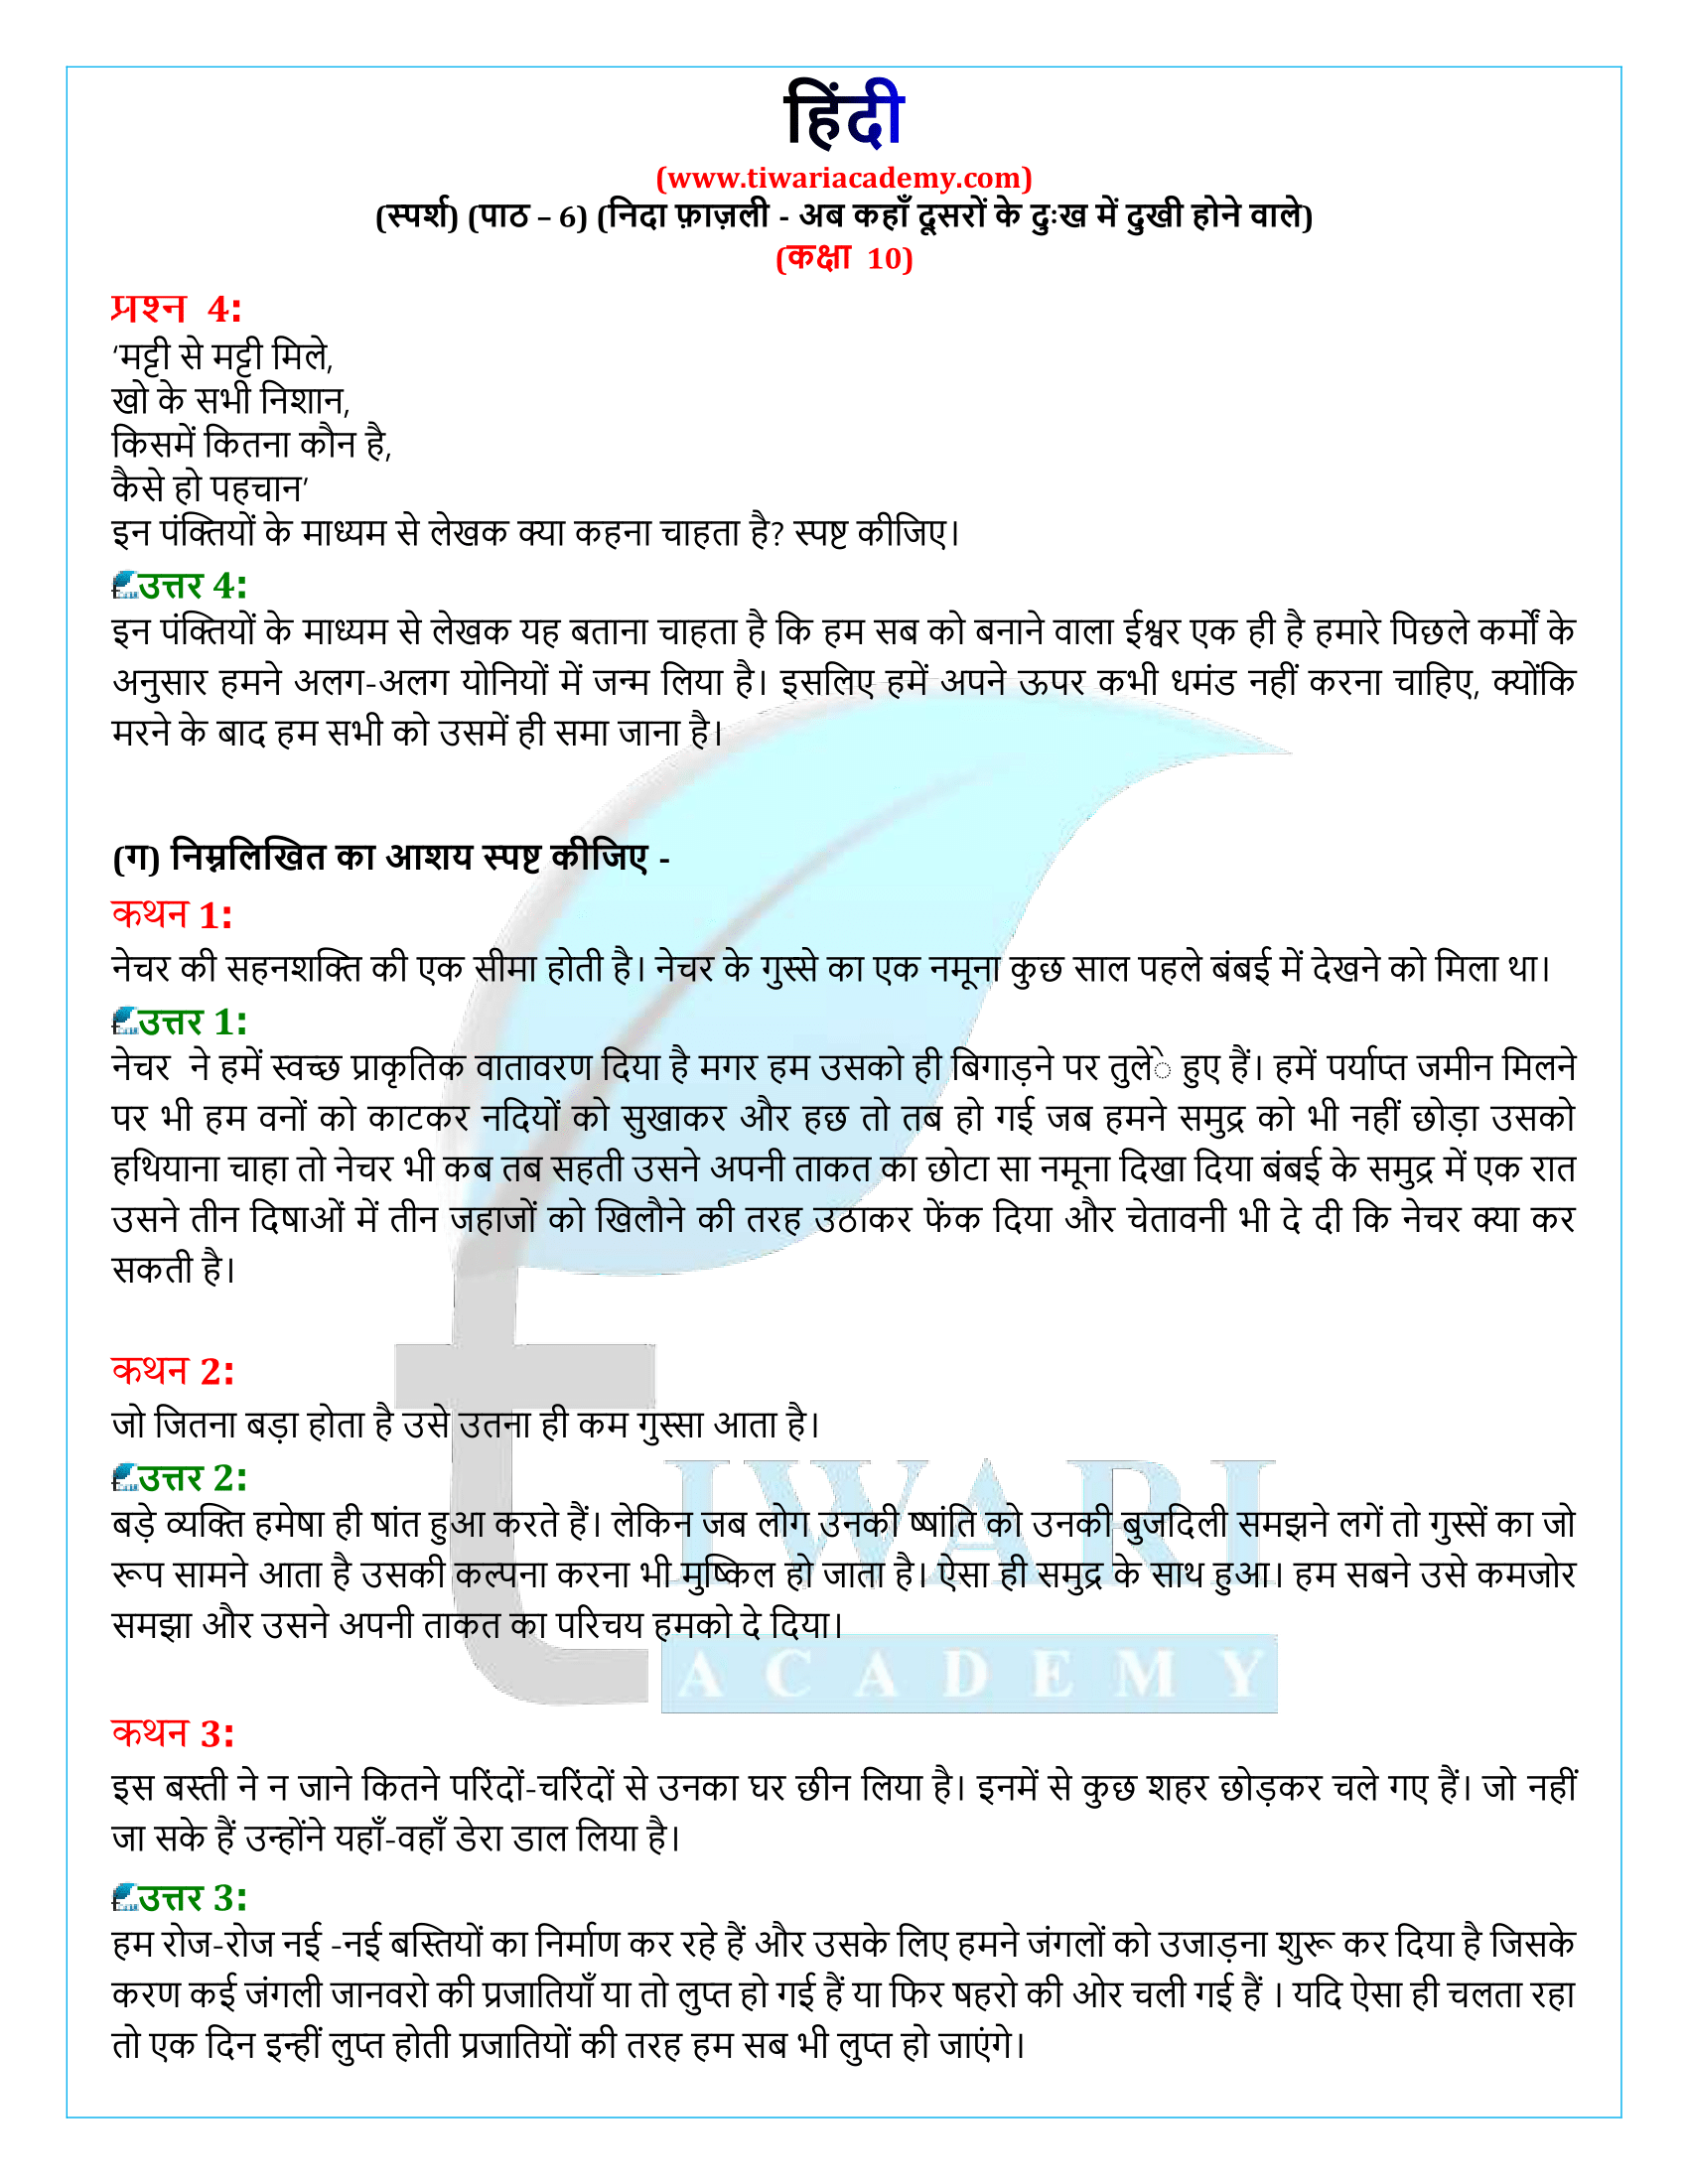 कक्षा 10 हिंदी स्पर्श गद्य अध्याय 6 के उत्तर हल